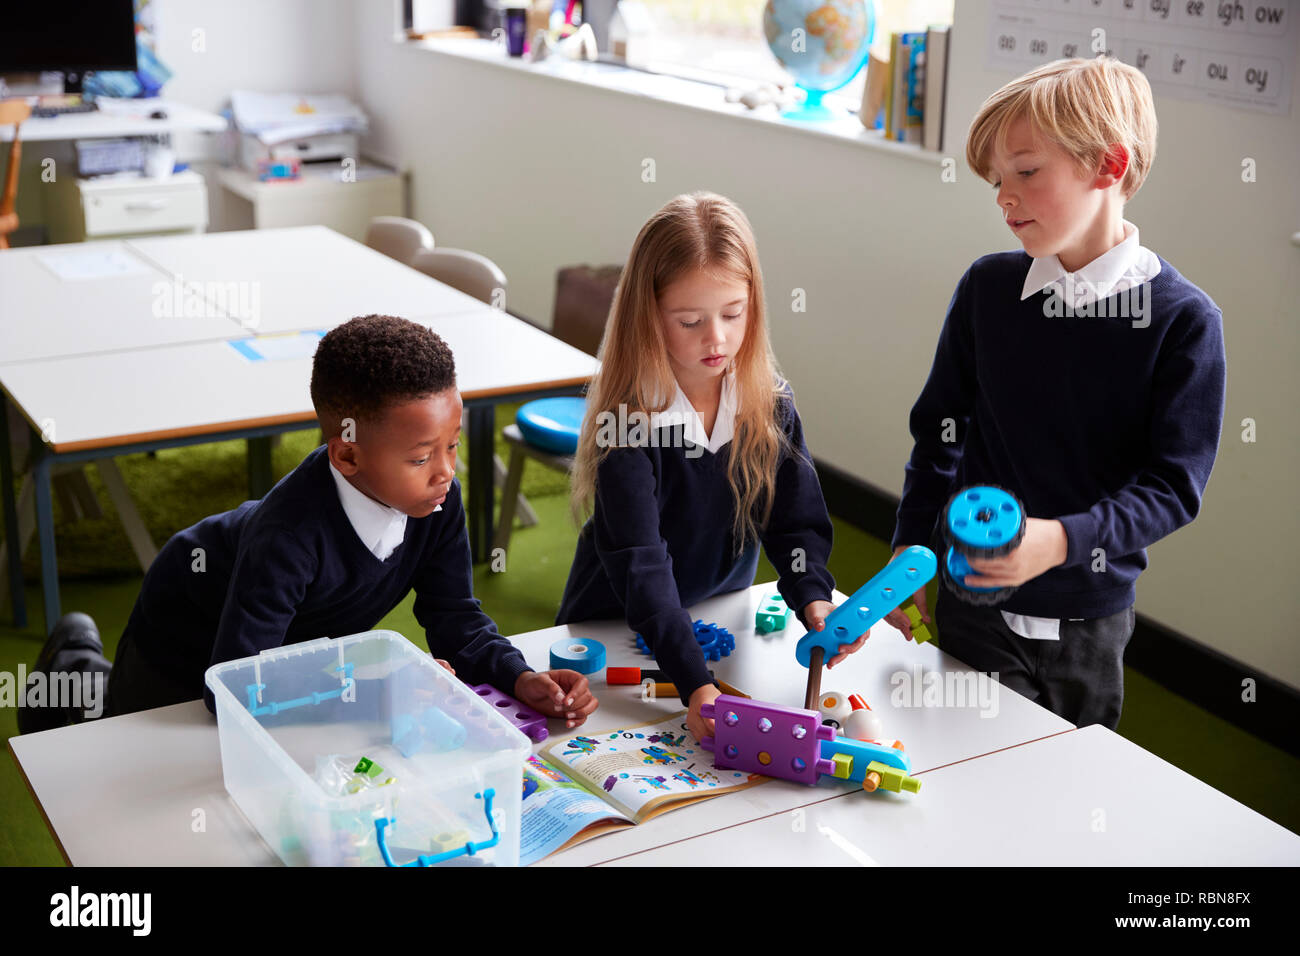 Erhöhten Blick auf drei Primary School Kids an einem Tisch in einem Klassenzimmer stehen, gemeinsam mit Spielzeug Bau Blöcke Stockfoto